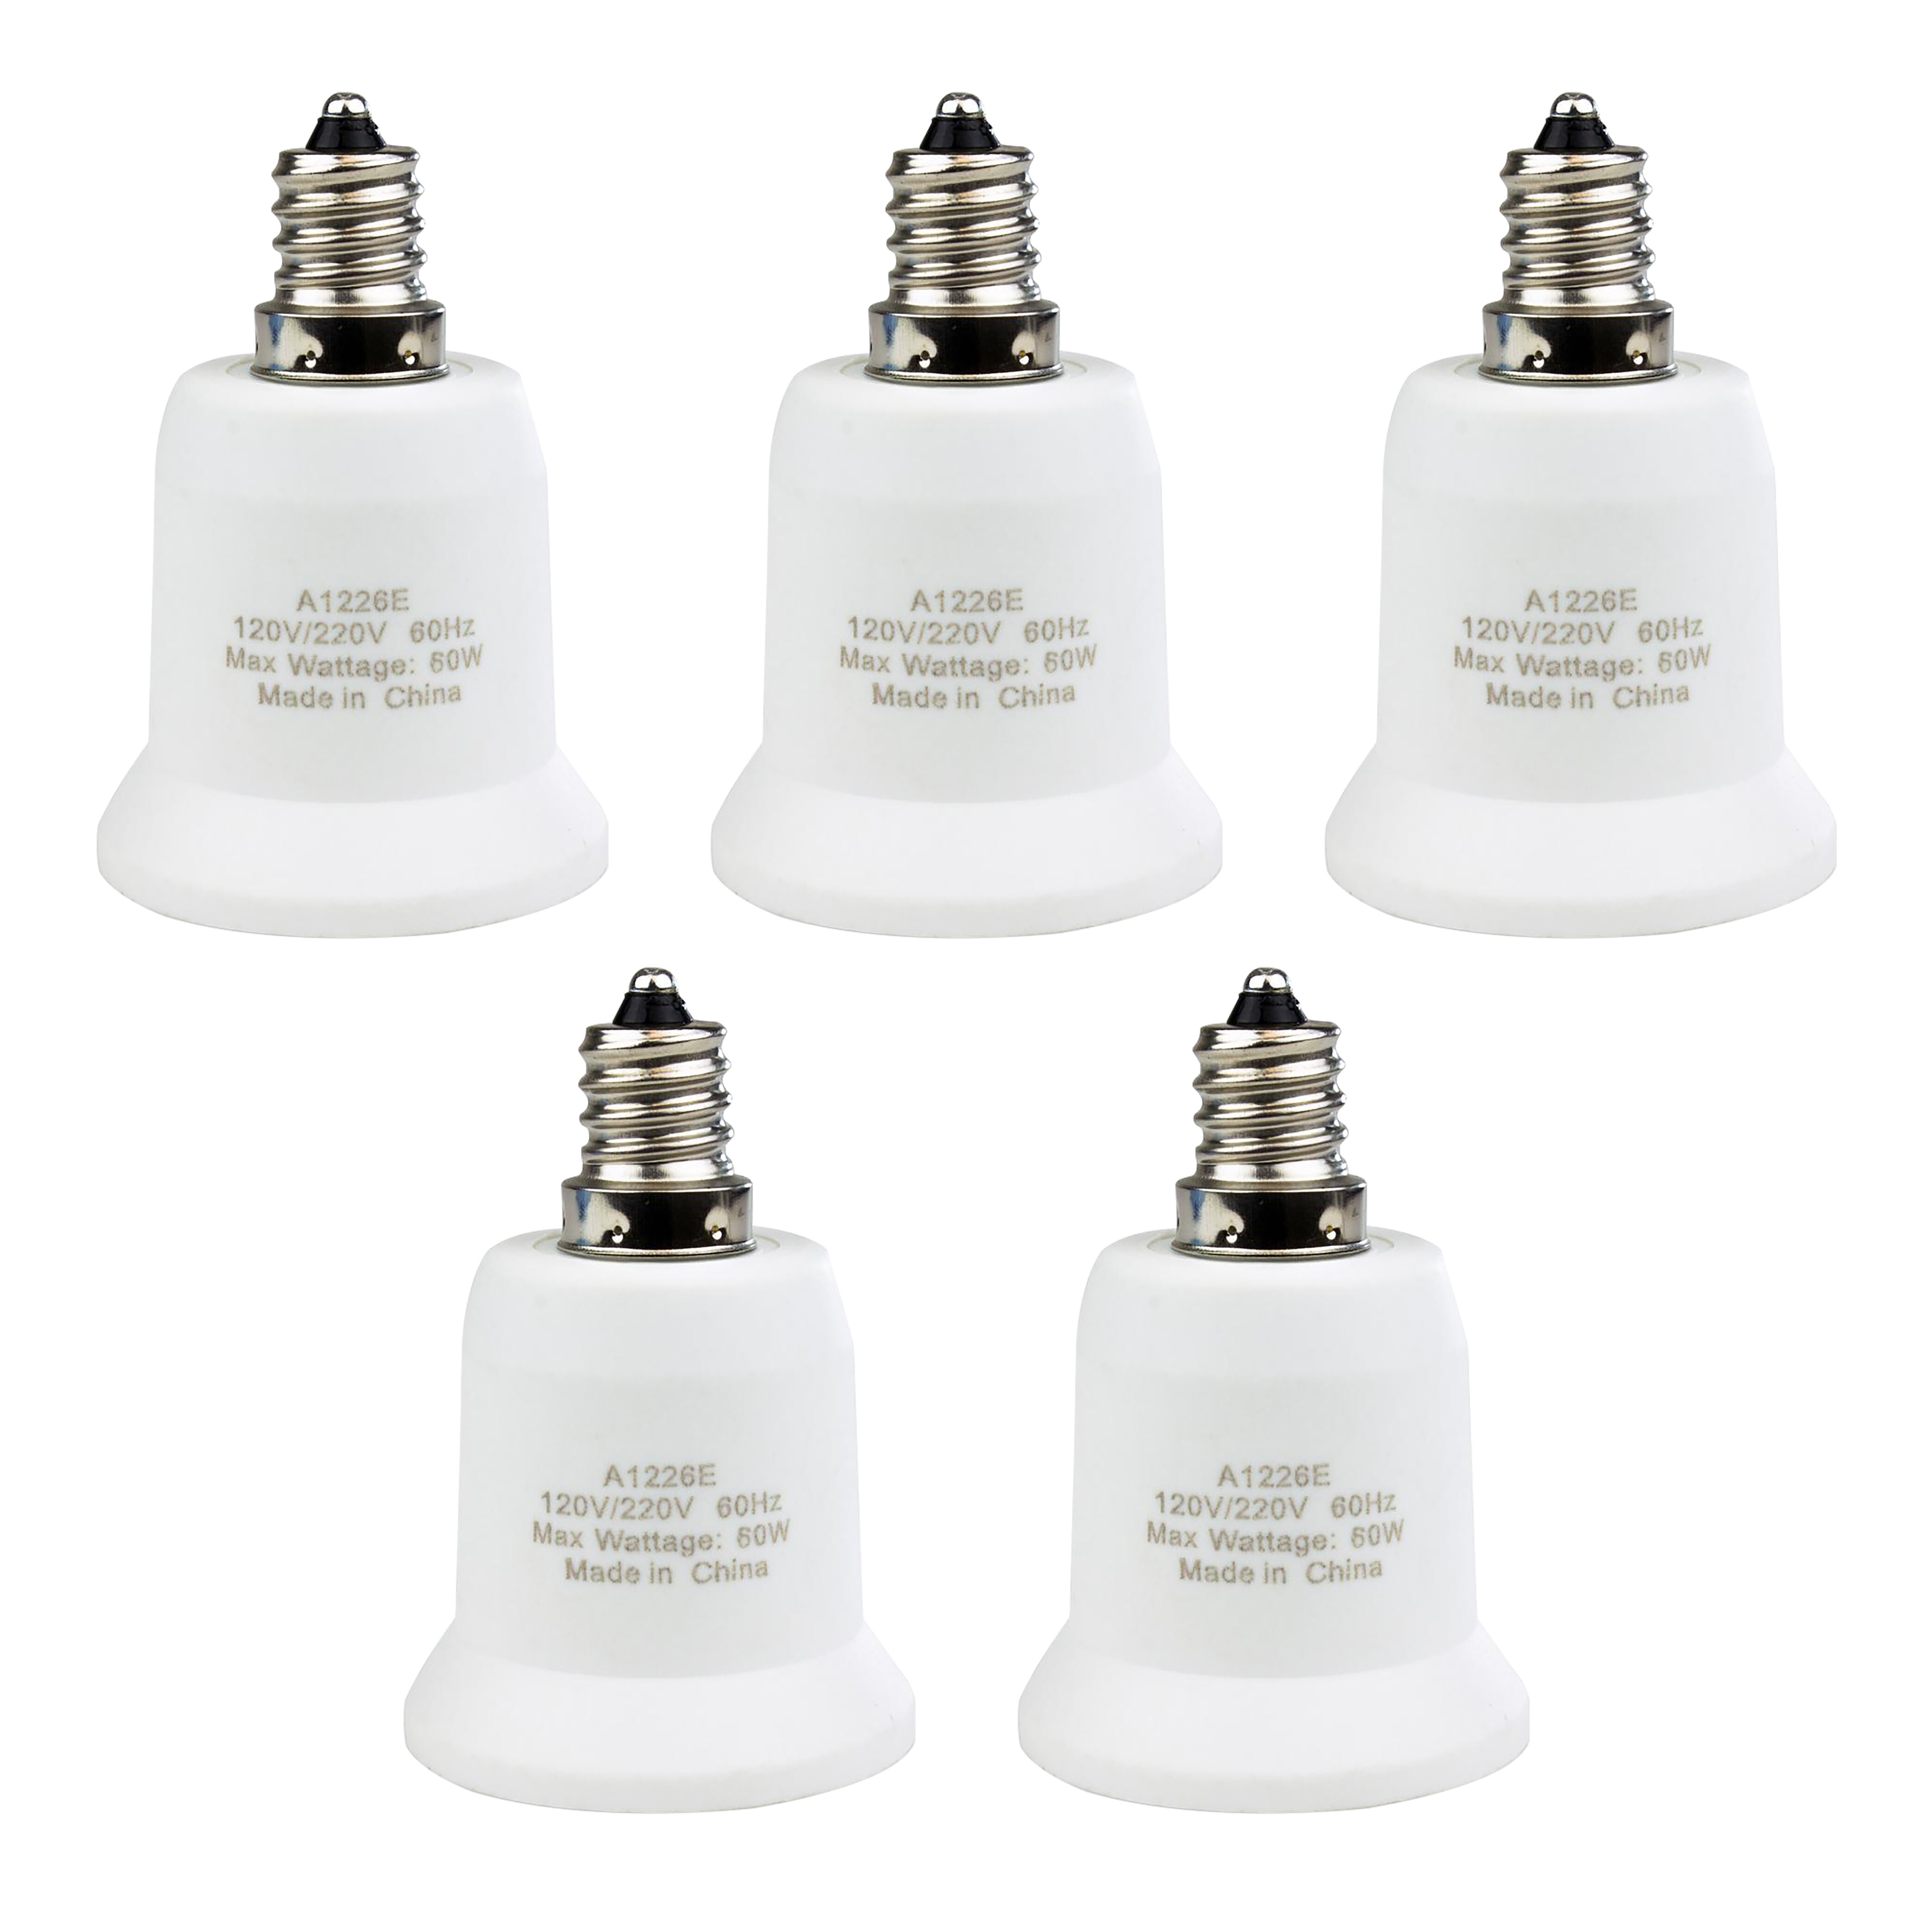 https://assets.wfcdn.com/im/44592962/compr-r85/1855/185589181/adaptateur-de-douille-dampoule-candelabre-a-lampe-standard.jpg